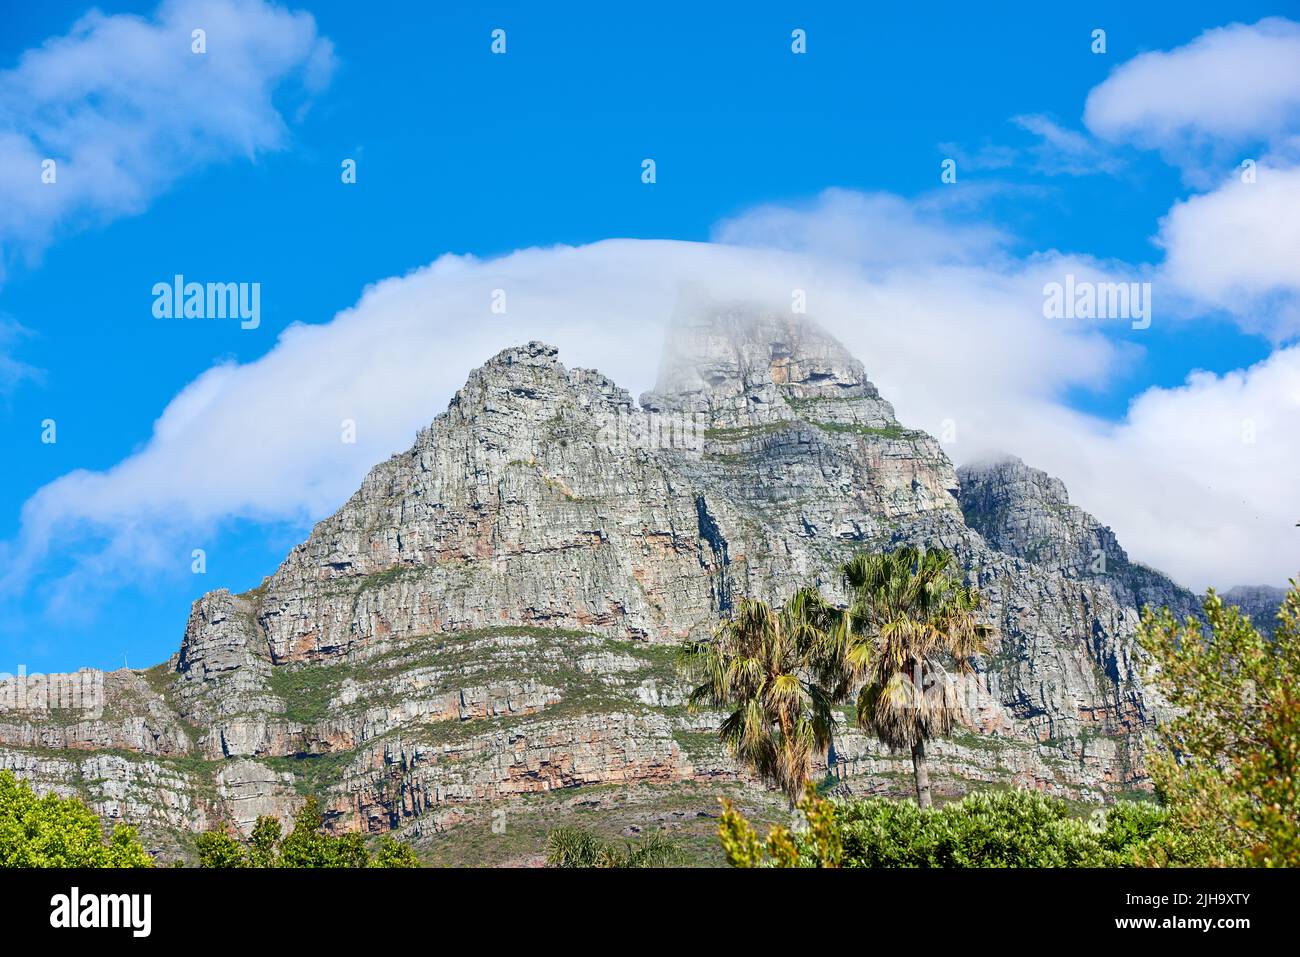 Lions Head Mountain mit wolkig blauem Himmel Kopieplatz. Wunderschöne Aussicht auf einen felsigen Berggipfel, der von viel üppiger grüner Vegetation bedeckt ist Stockfoto